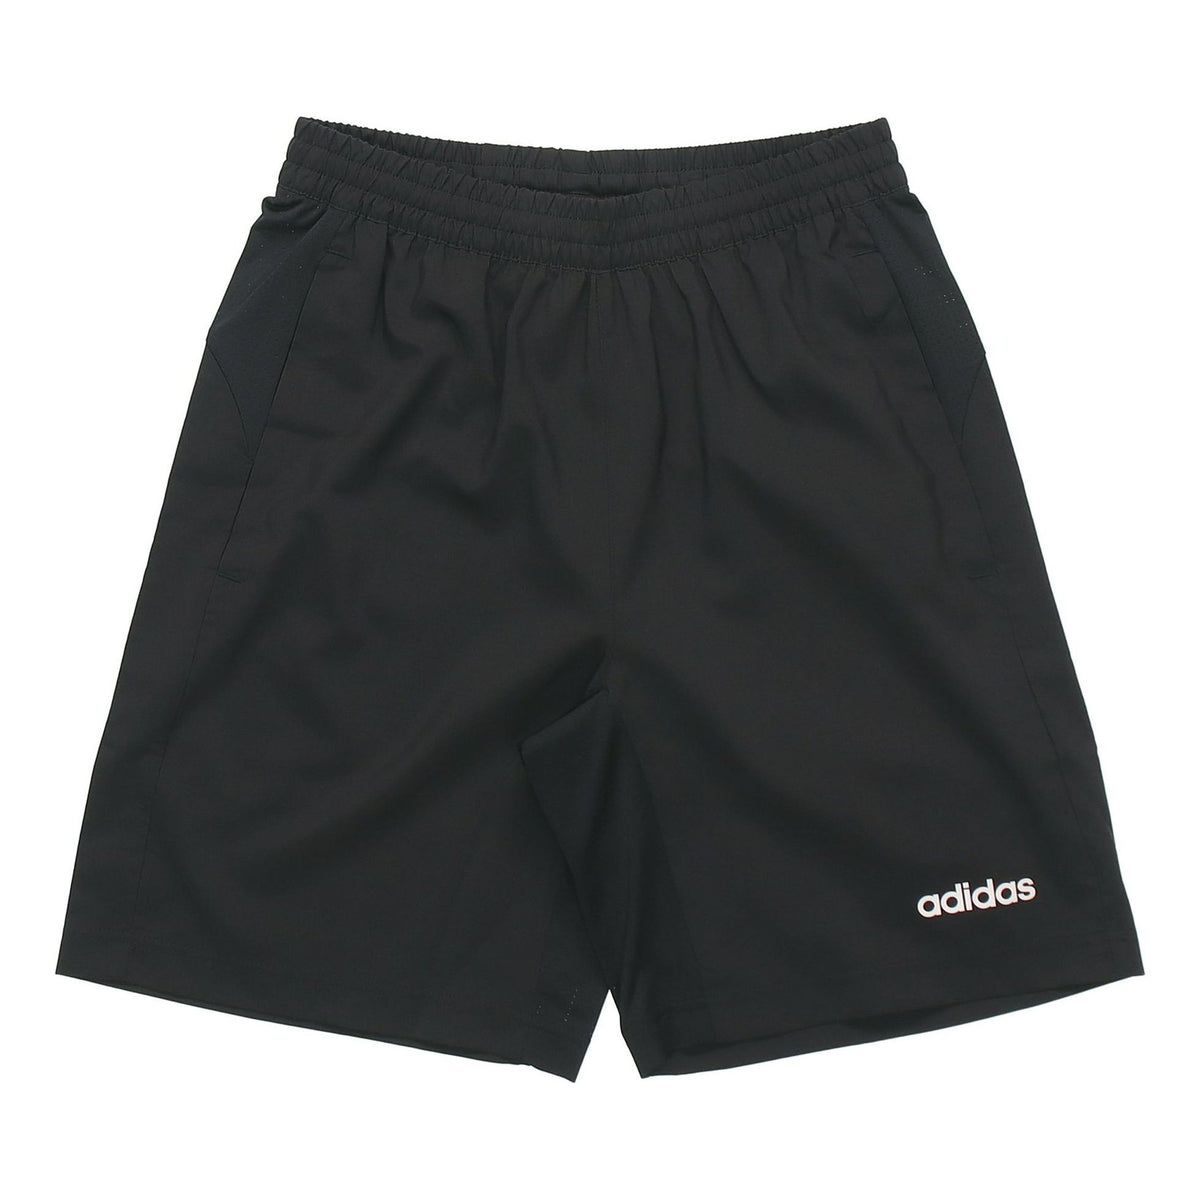 adidas D2M COOL SHO WV Training Sports Shorts Black DW9568 - KICKS CREW